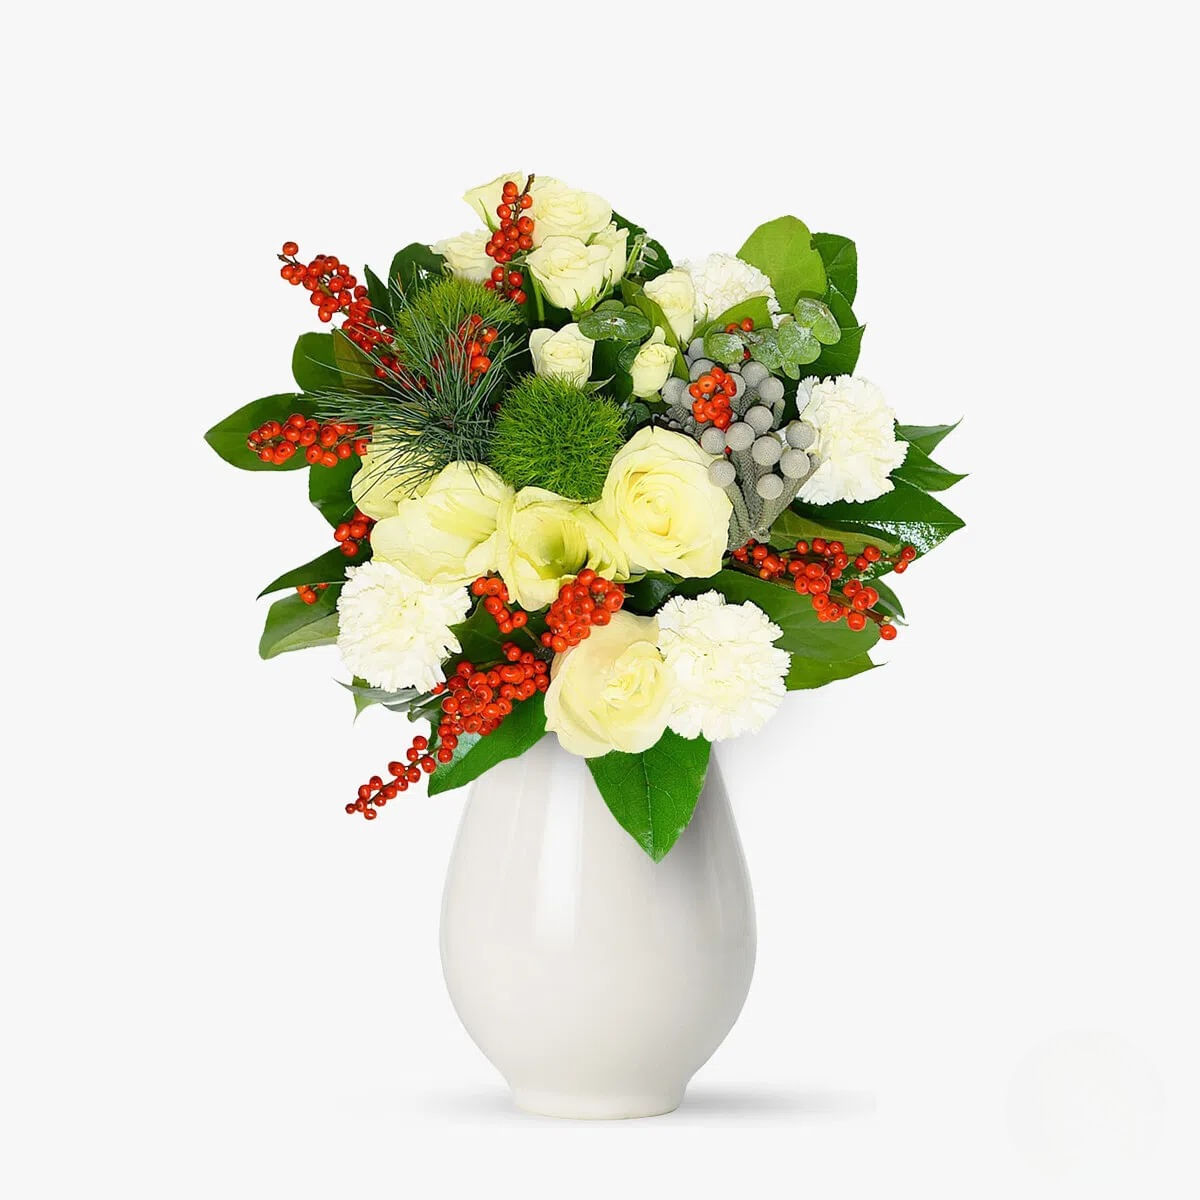 Buchet de flori cu amarylis alb, 3 trandafiri albi, minirosa albi, garoafe albe Colind magic